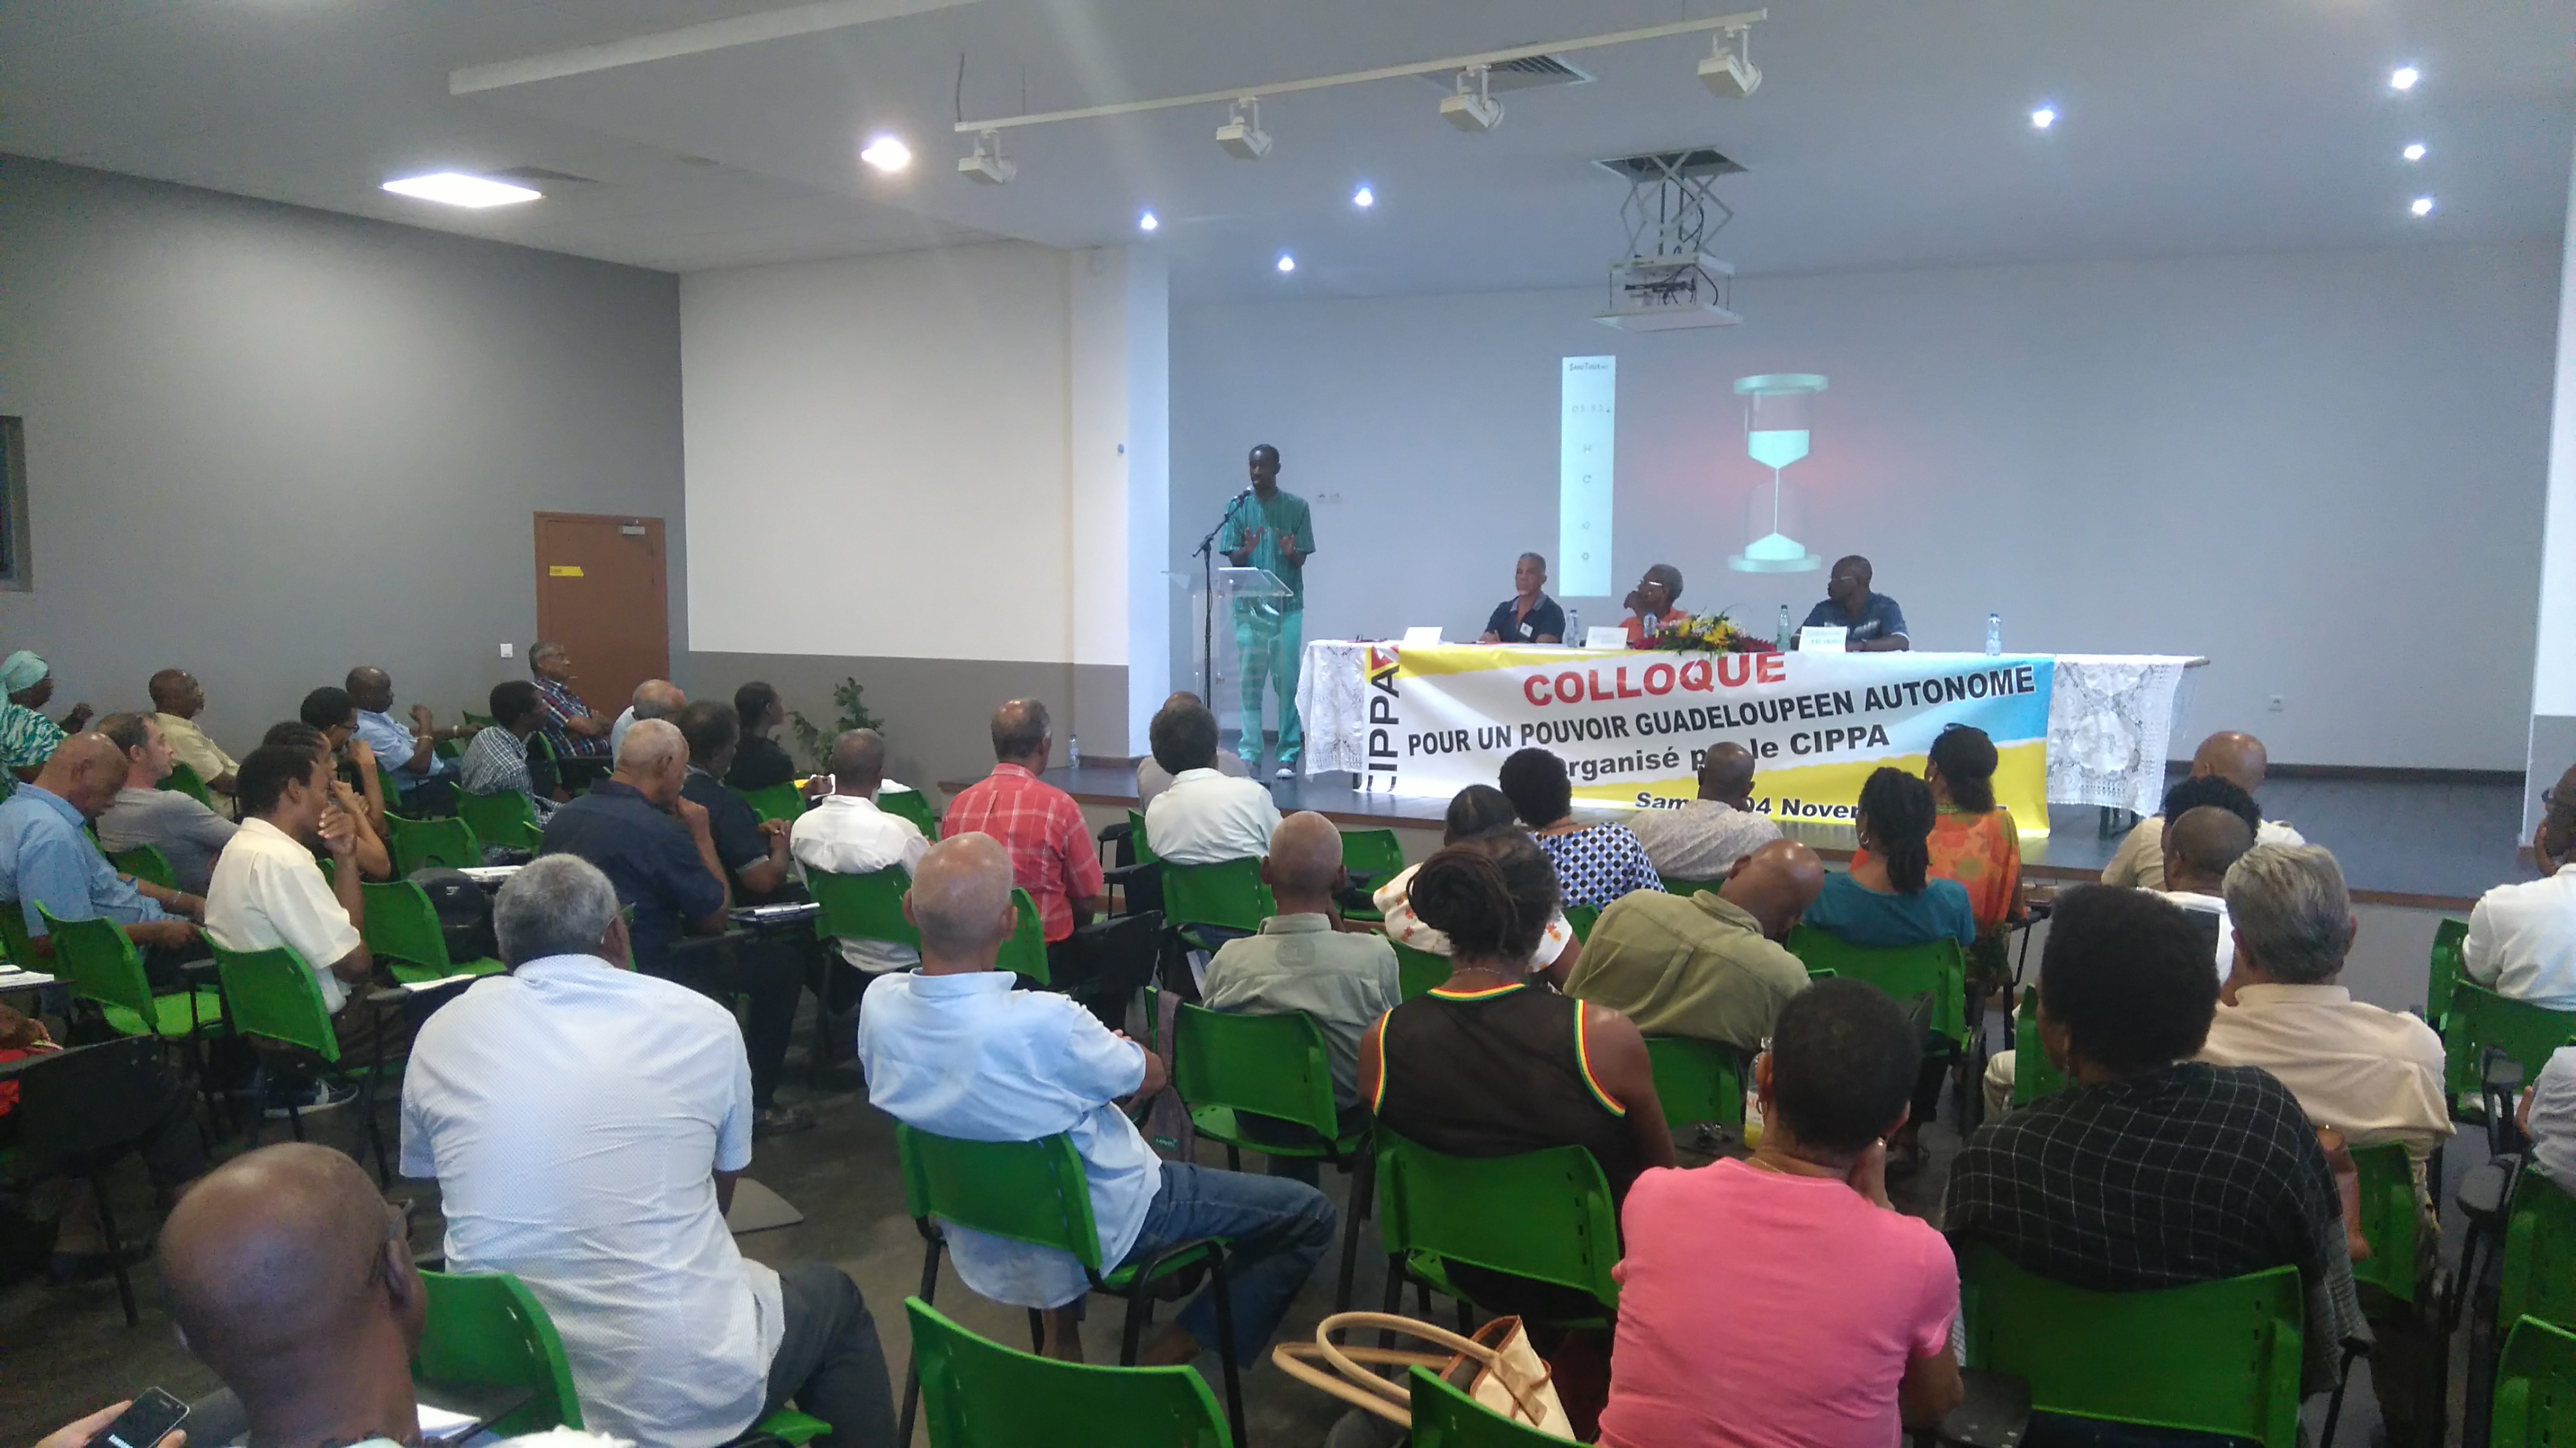 Guadeloupe : La revendication de l'Autonomie s'impose dans le débat politique